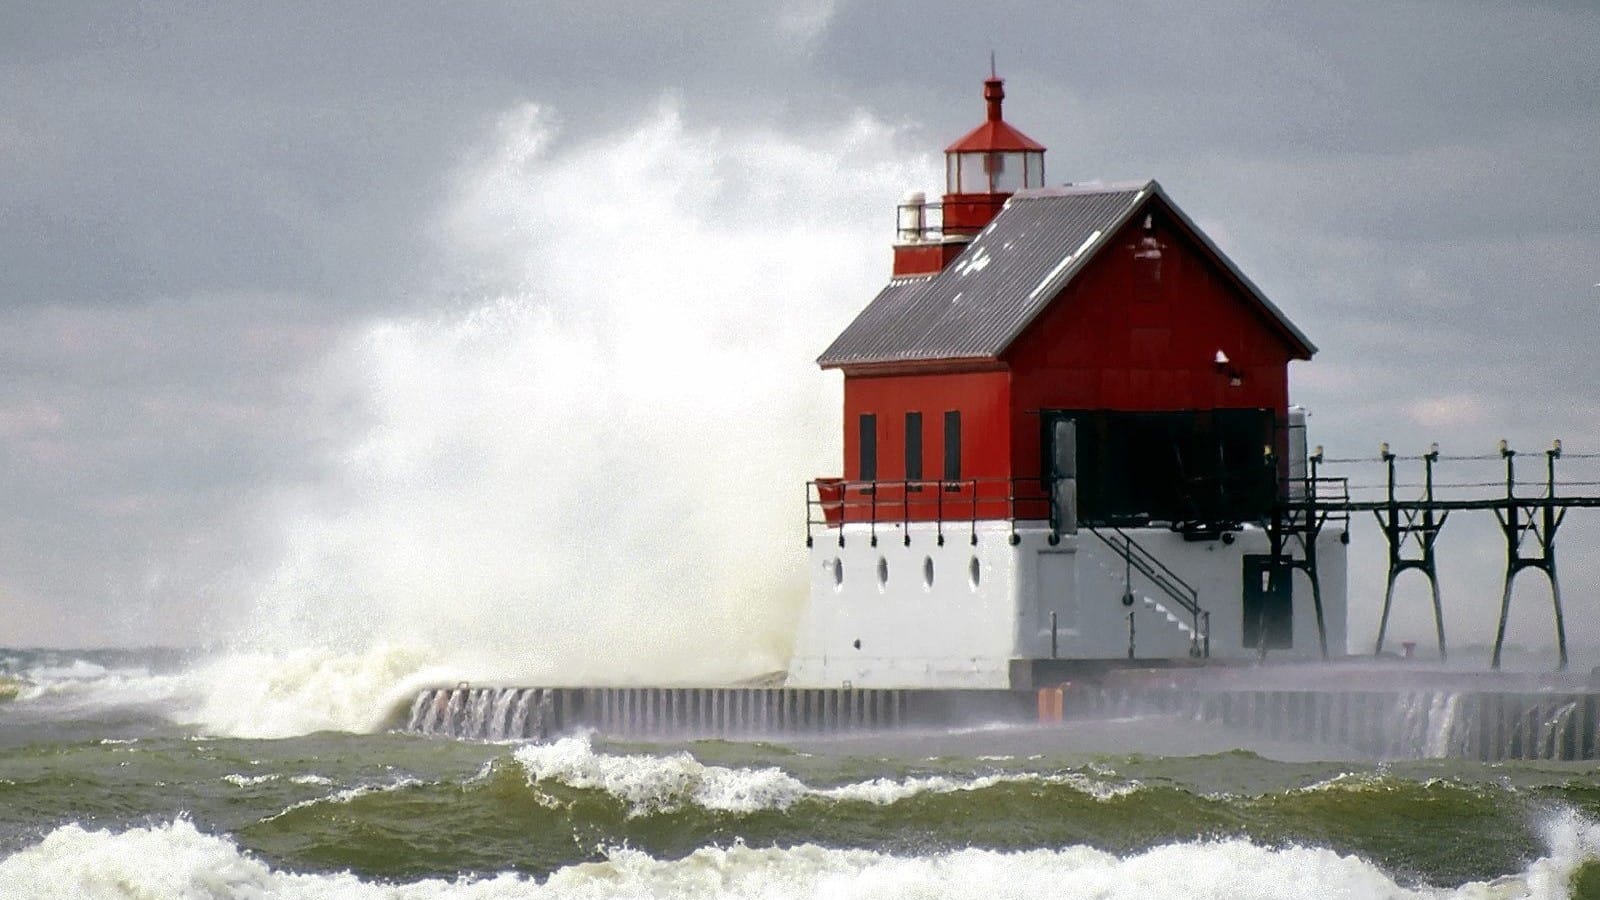 海啸中的灯塔在风暴骇浪中屹立